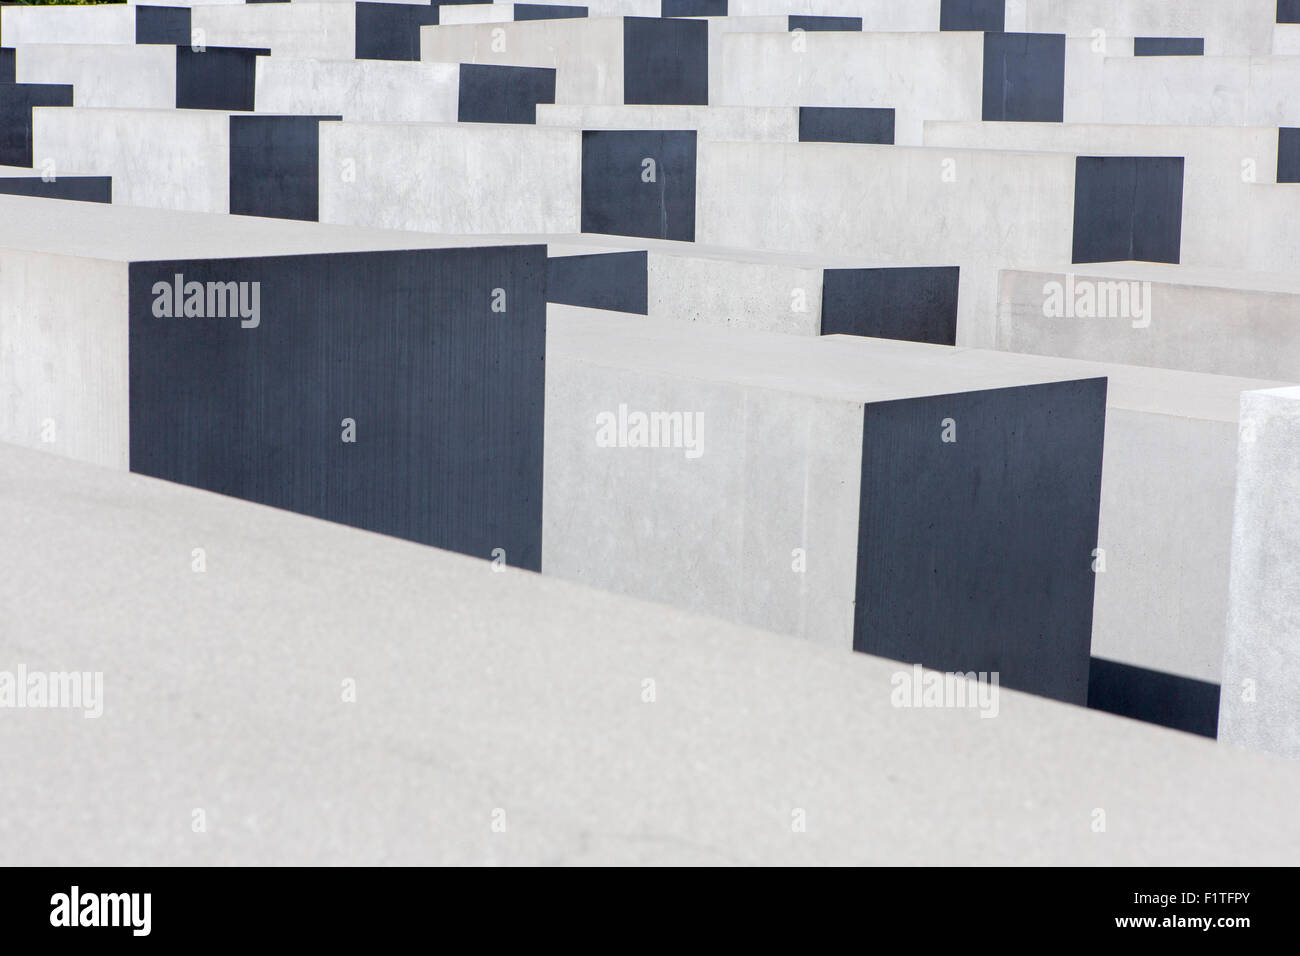 Berlino , Germania. Il monumento agli ebrei assassinati d'Europa (Denkmal für die ermordeten Juden Europas) Foto Stock